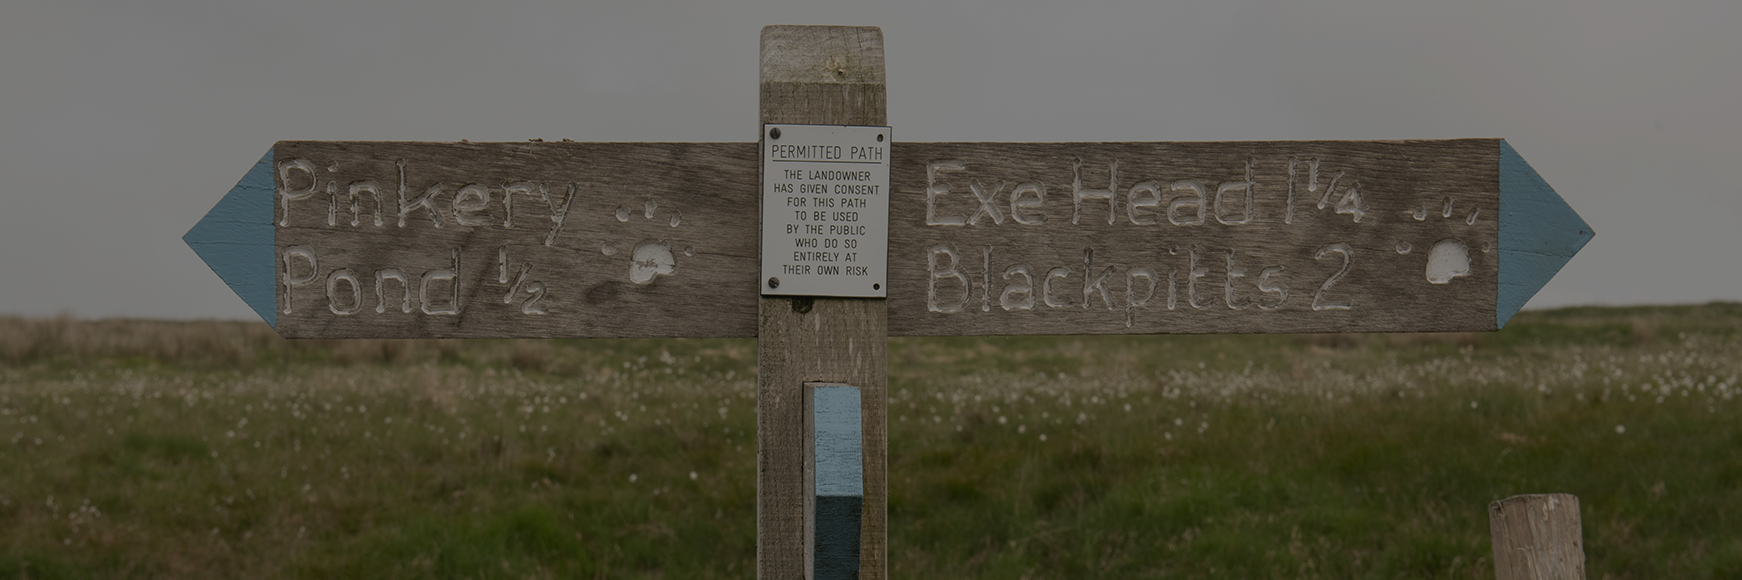 The Best Long Walks around Exmoor banner image